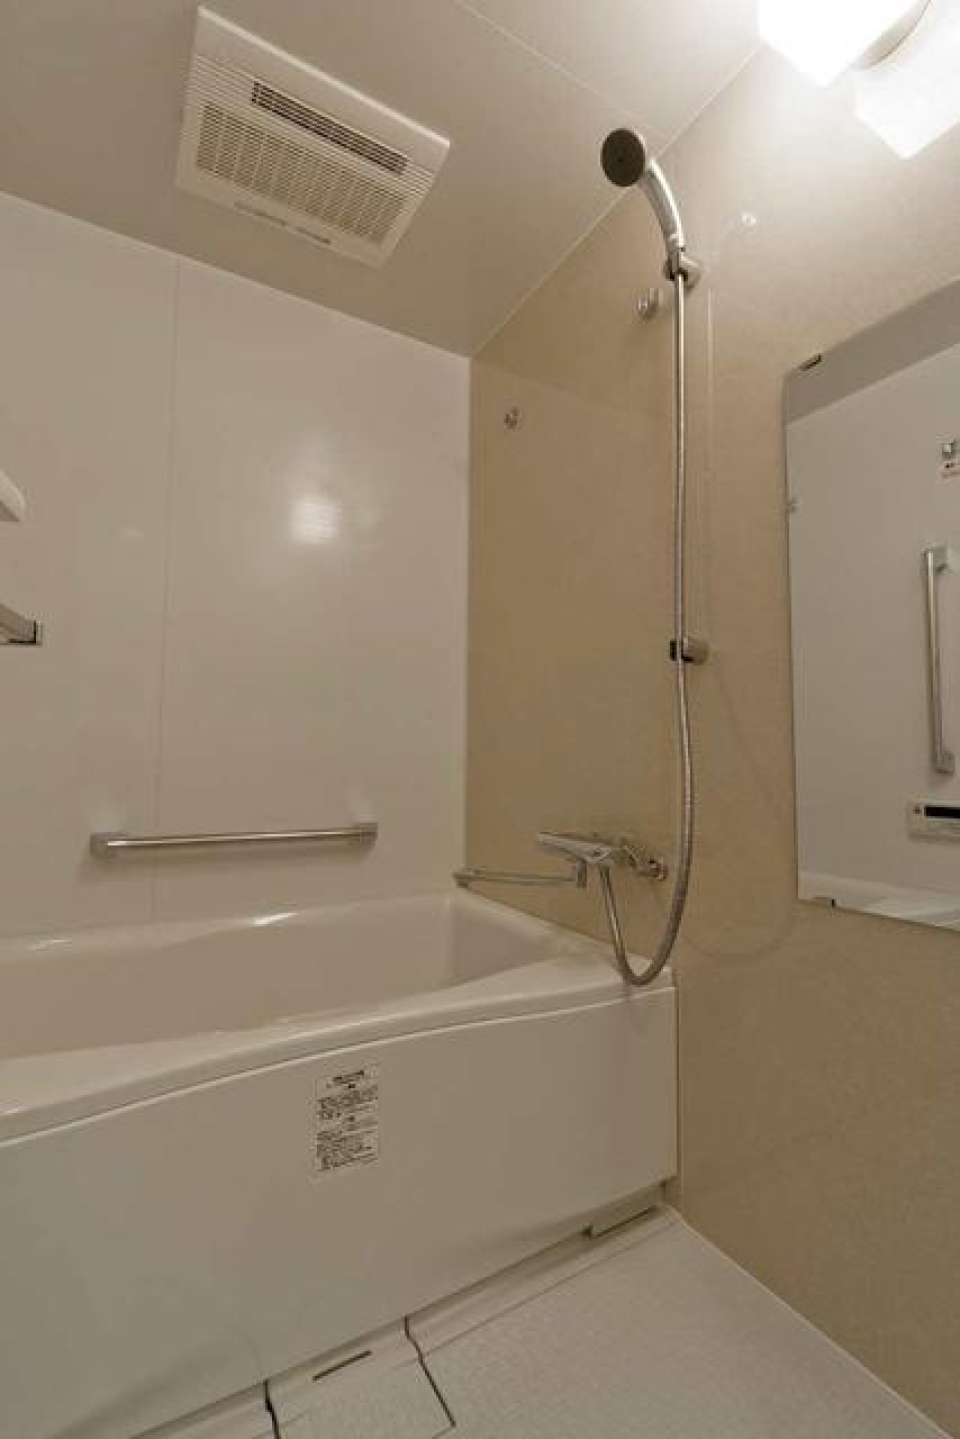 ナチュラルなパネルが採用された浴室です。※写真は同タイプ住戸です。